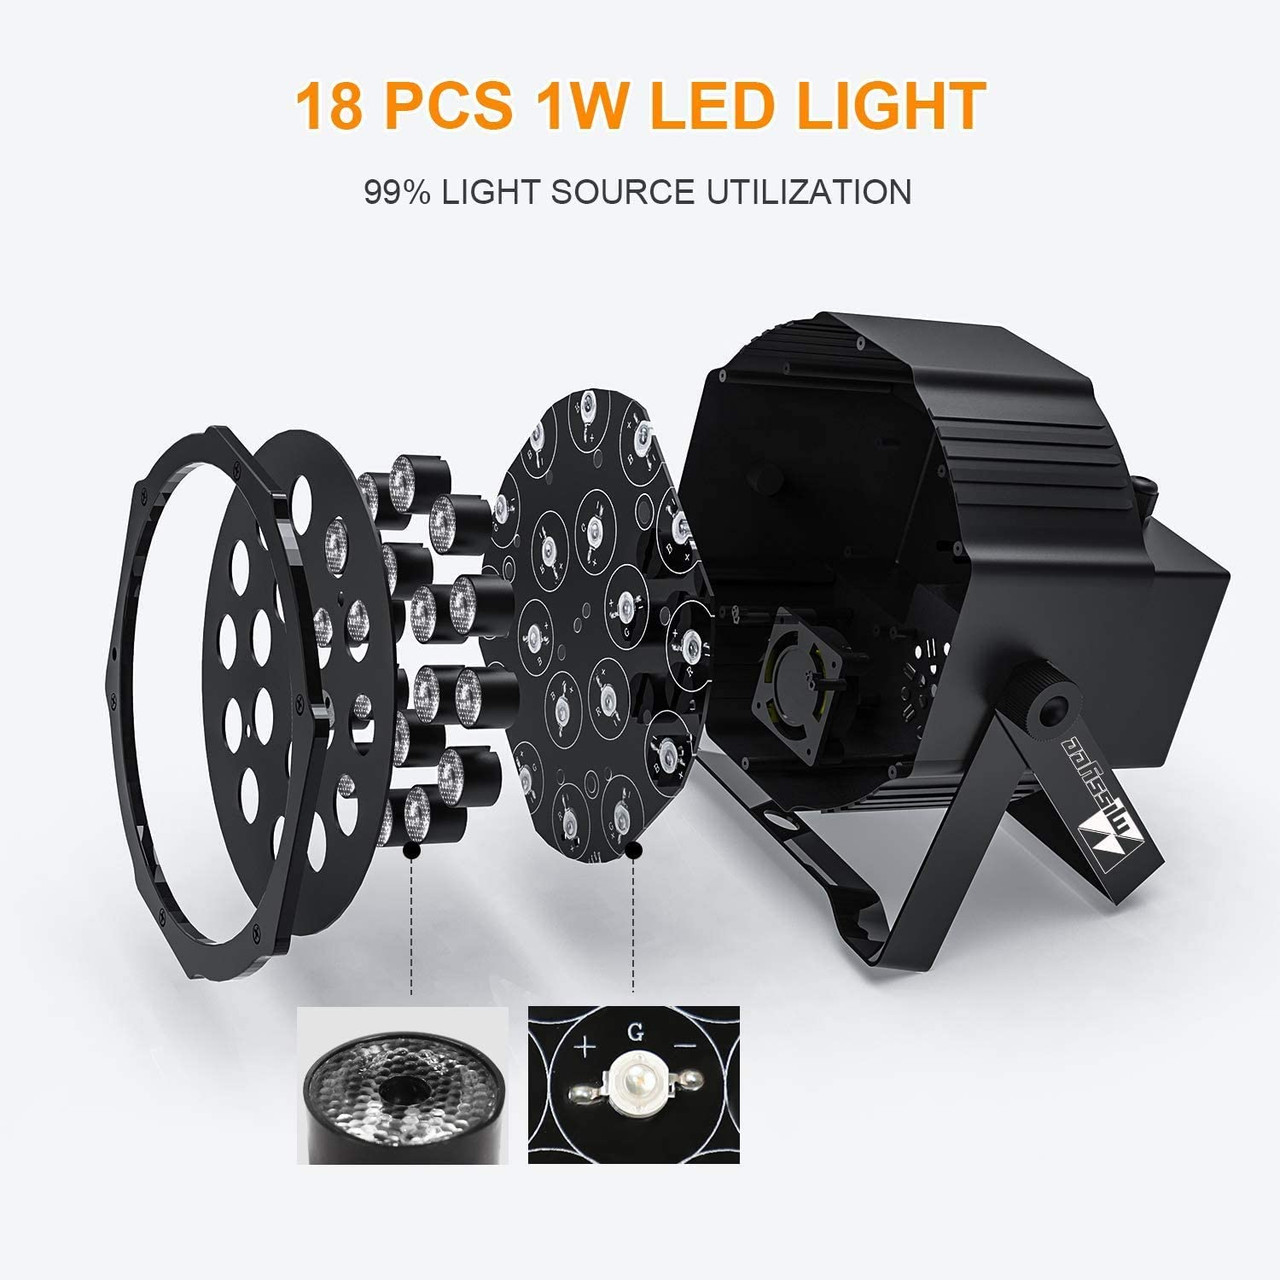 EMS Laser 18 x 1W RGB LED Par Stage Light P18-1W LED Par Light